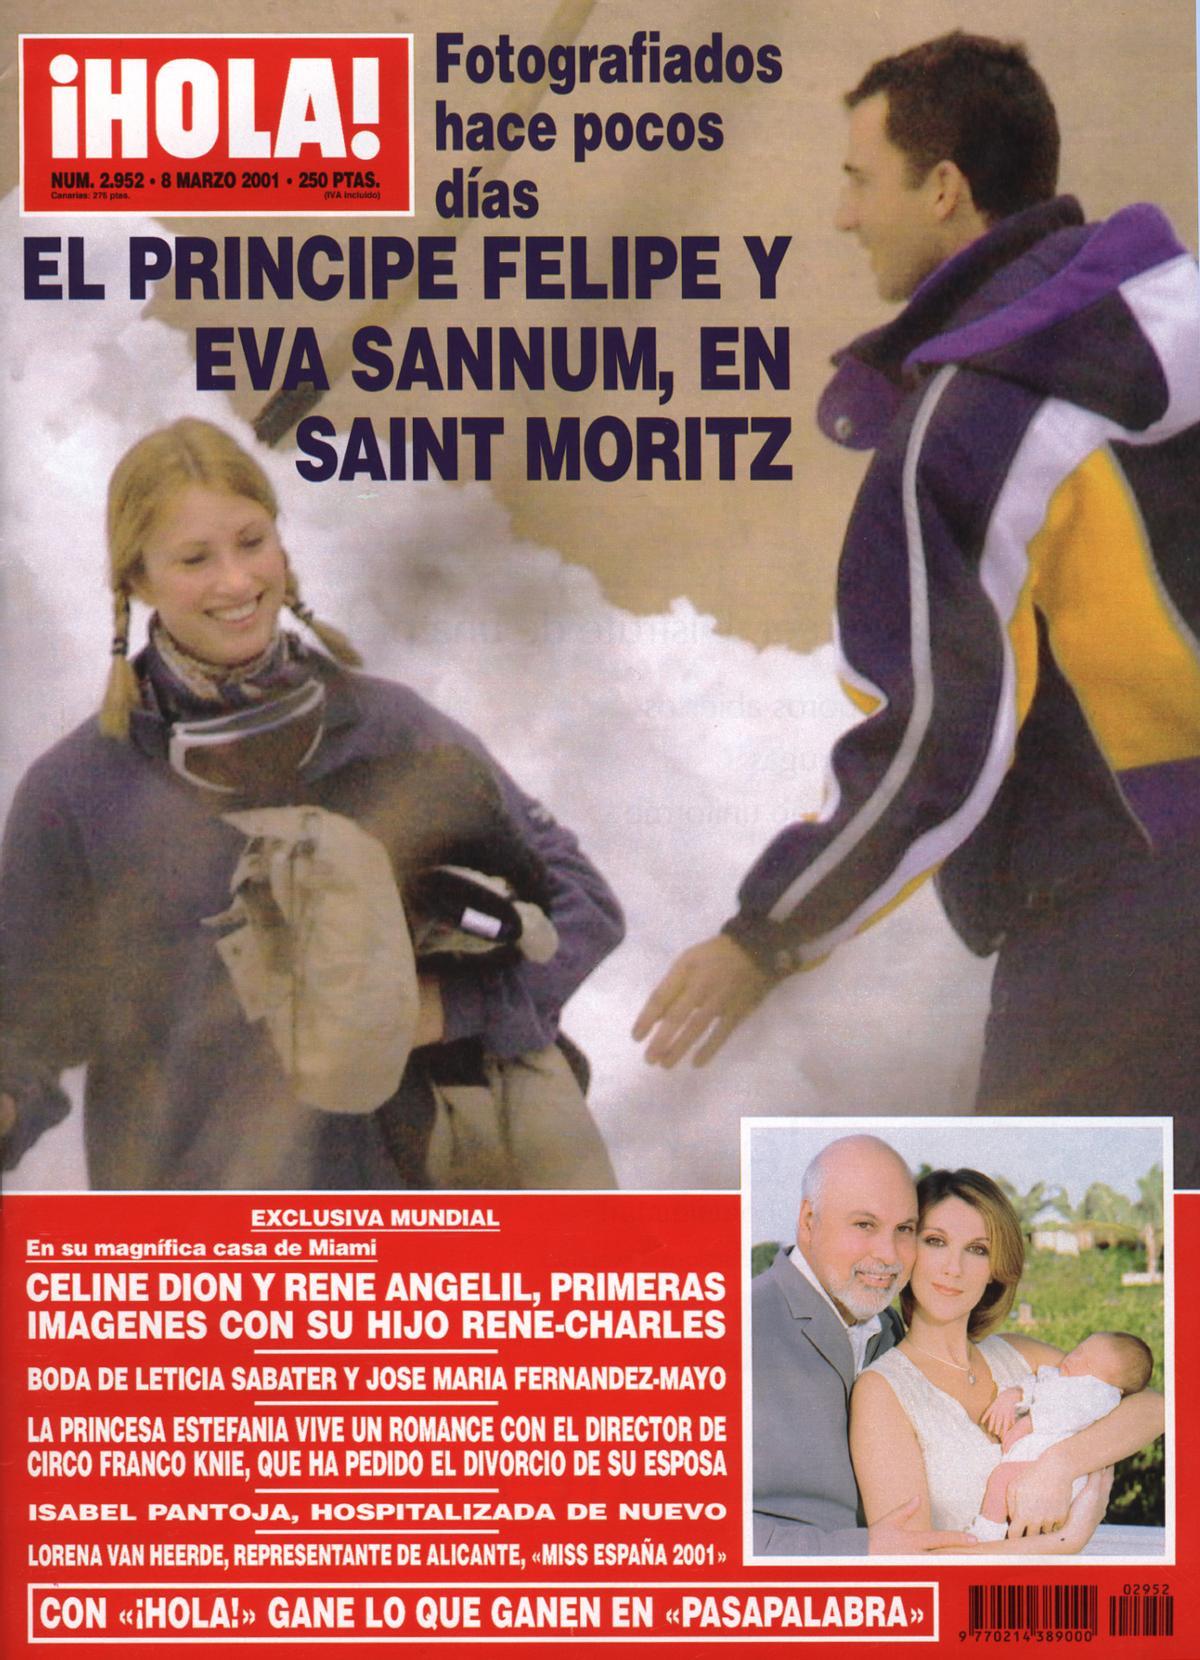 Portada de la revista '¡Hola!' en la que aparece el príncipe Felipe y la modelo Eva Sannum en Saint Moritz.